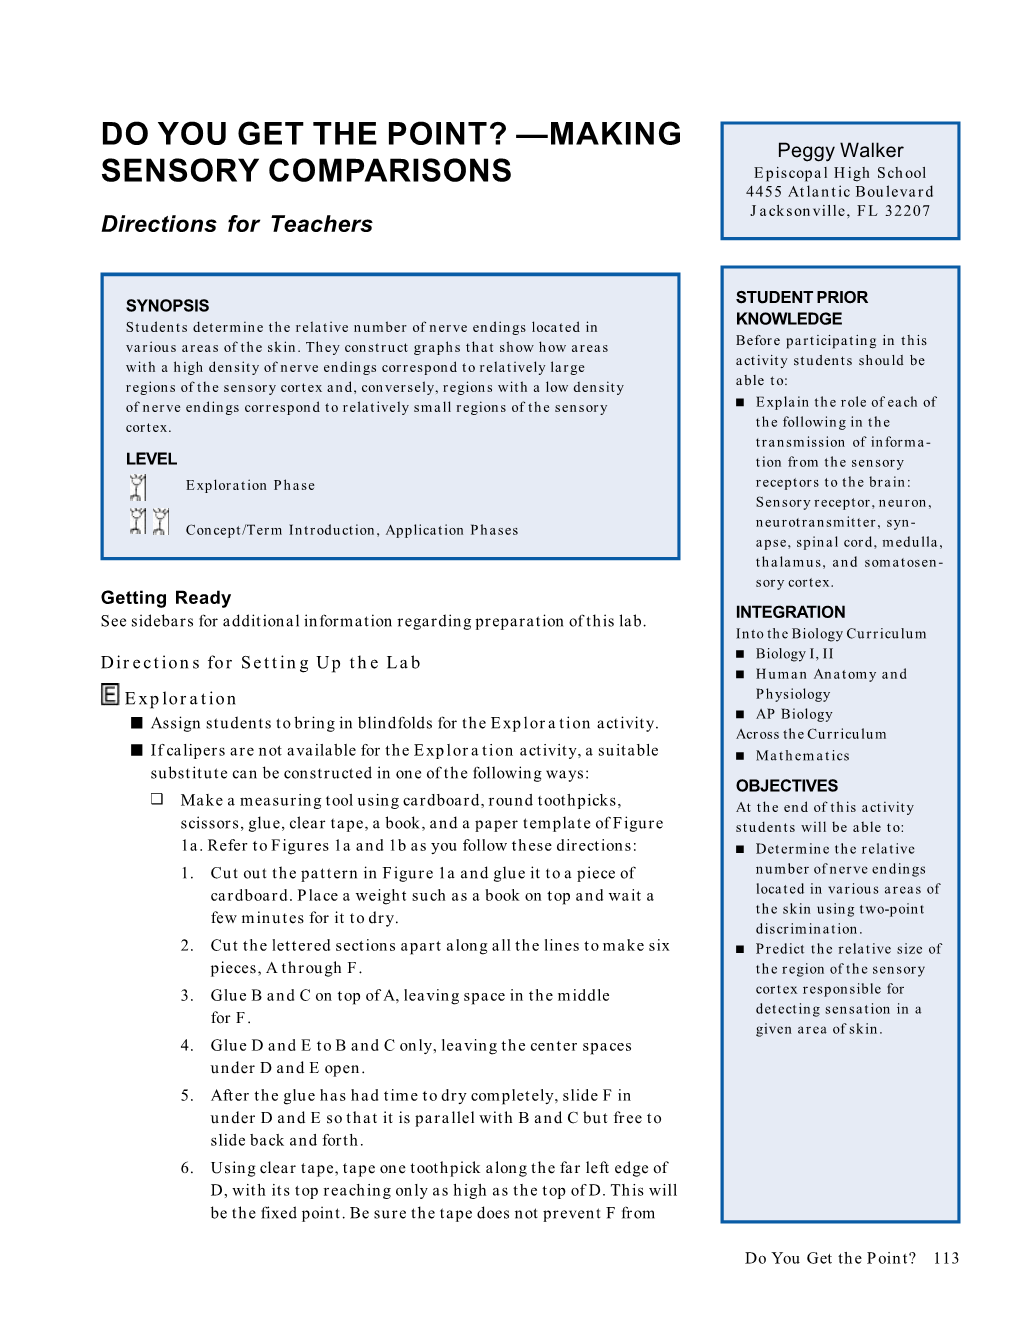 Making Sensory Comparisons